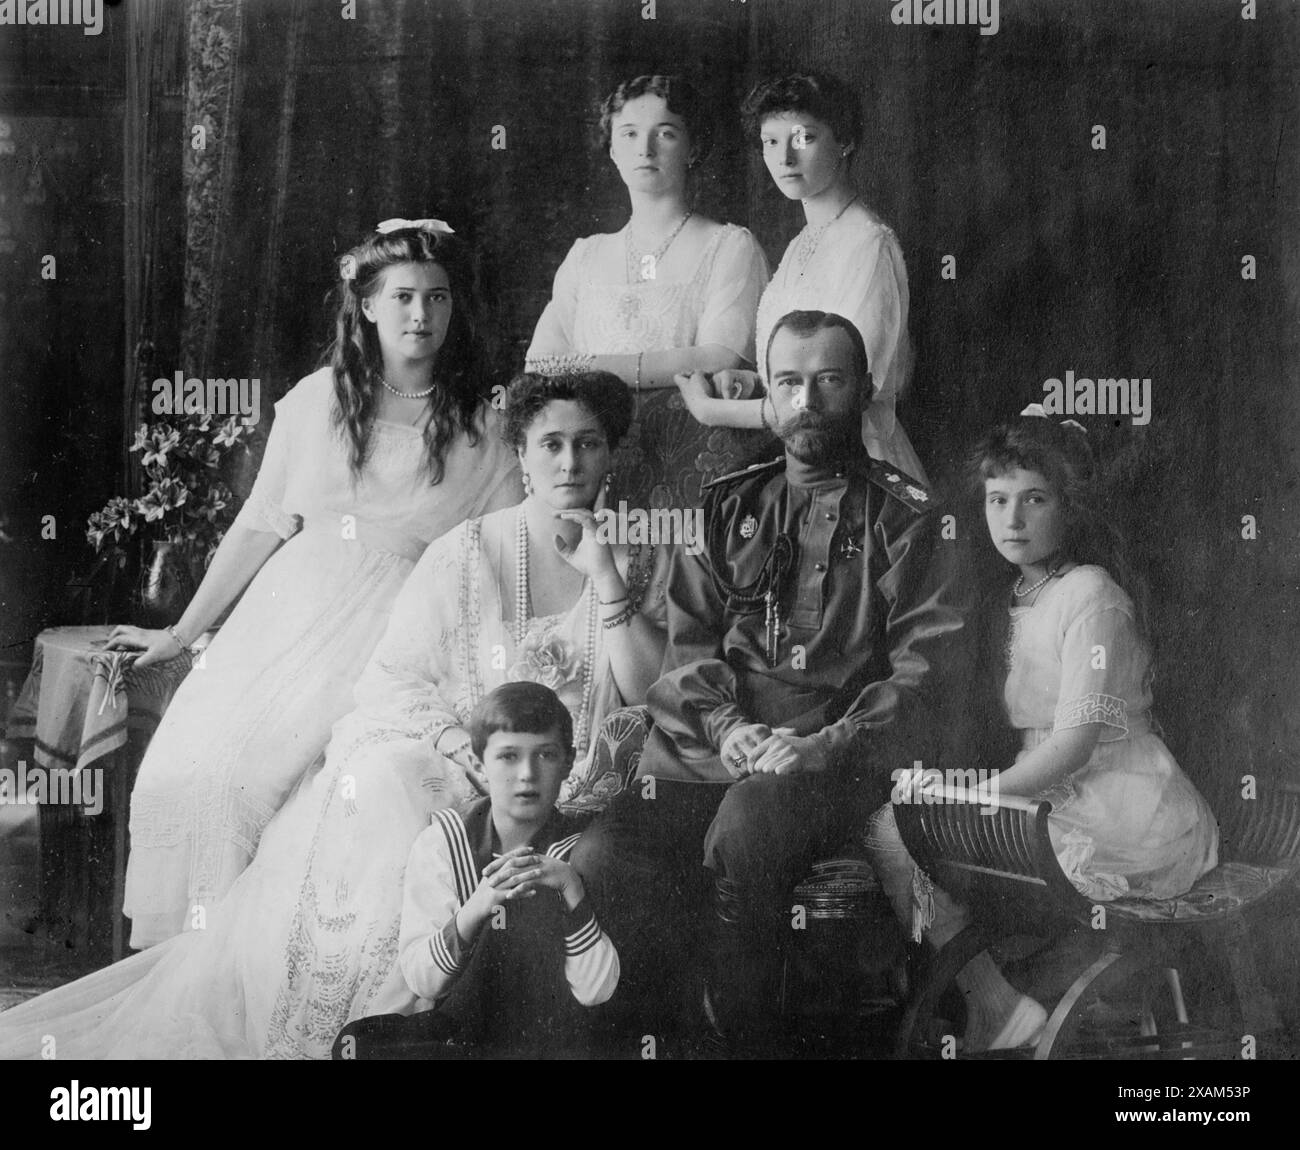 Königliche russische Familie, 1914. Zeigt Mitglieder der Romanovs, der letzten königlichen Familie Russlands, einschließlich: Sitzende (von links nach rechts) Marie, Königin Alexandra, Zar Nikolaus II., Anastasia, Alexei (vorne), und stehend (von links nach rechts), Olga und Tatiana. Stockfoto